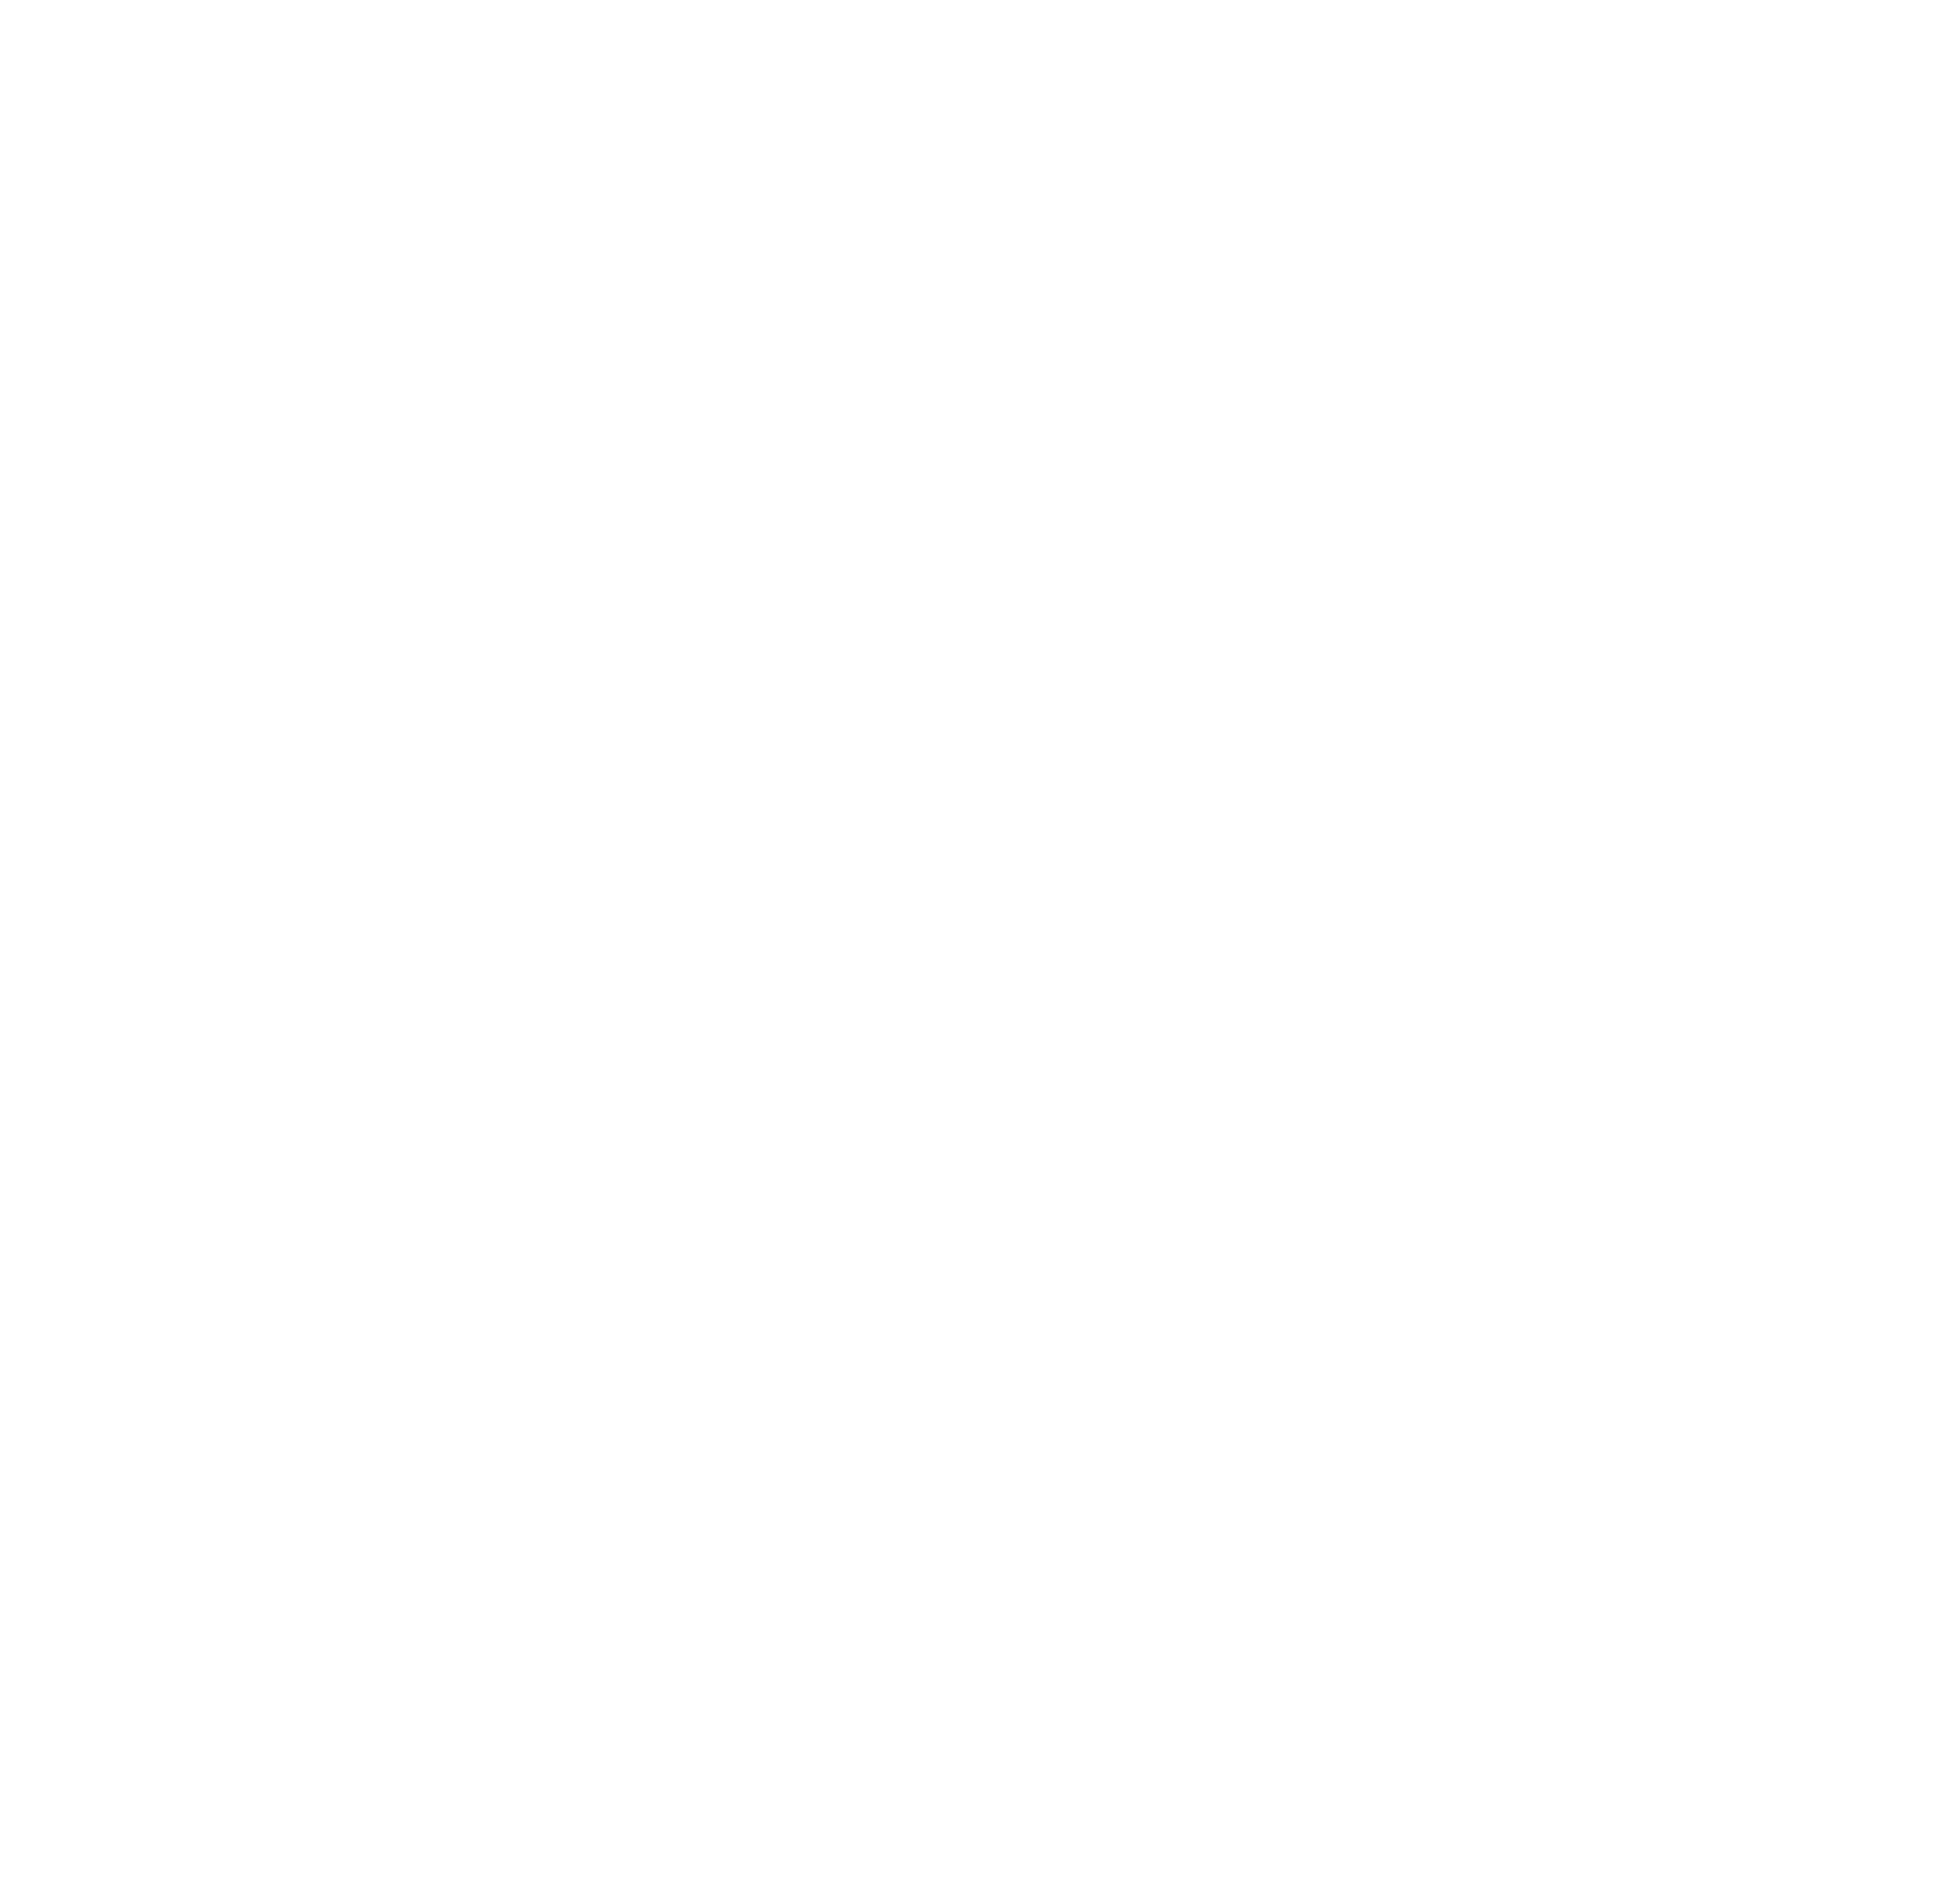 Steve Schäfer